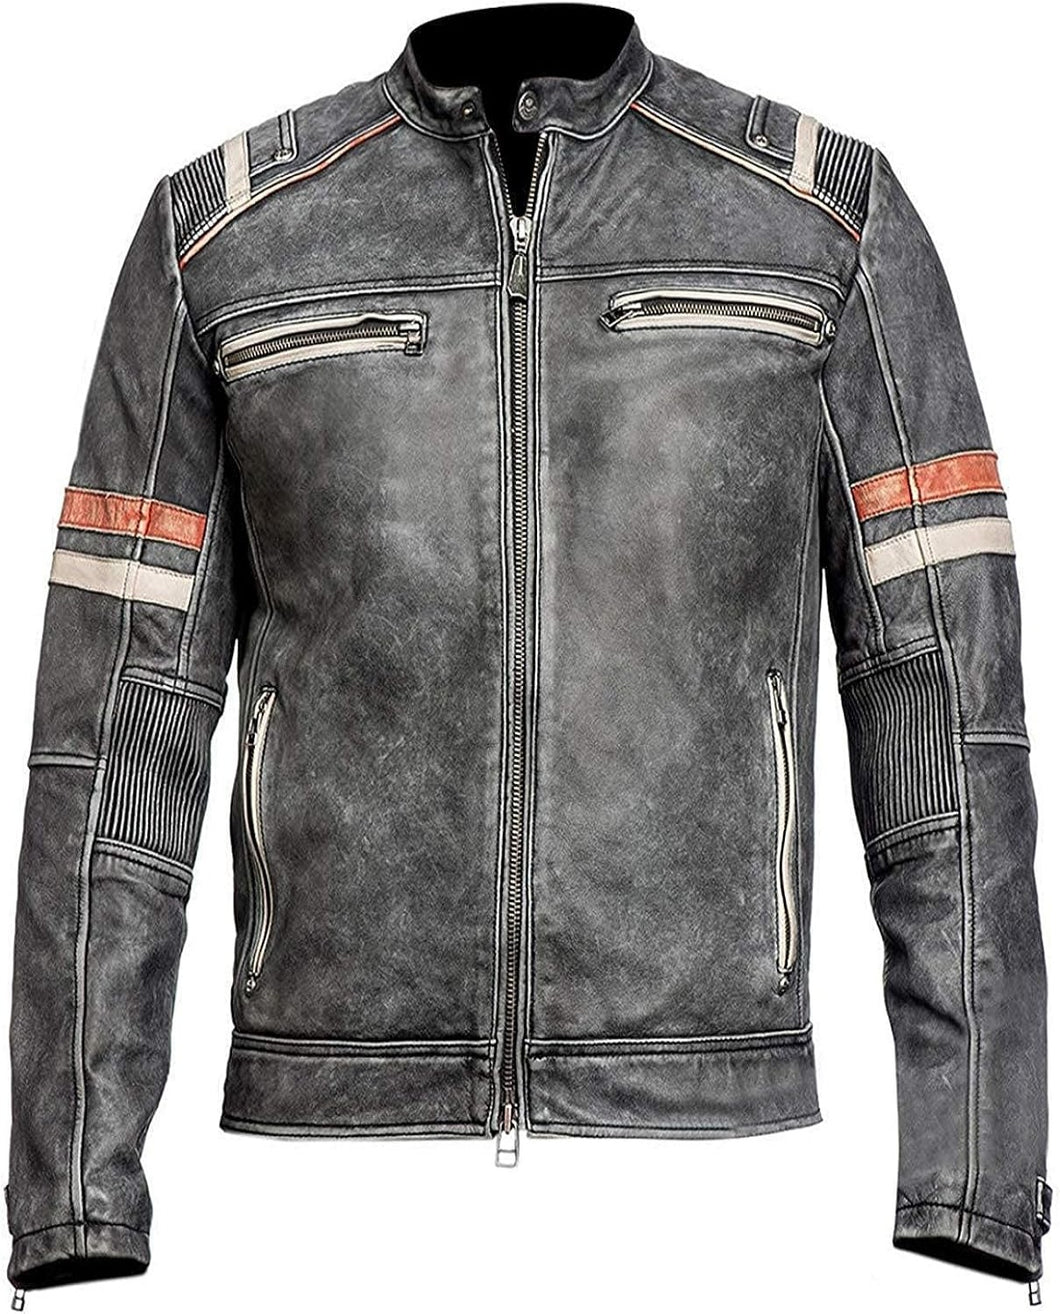 Men's Retro Biker Vintage Cafe Racer Jacket